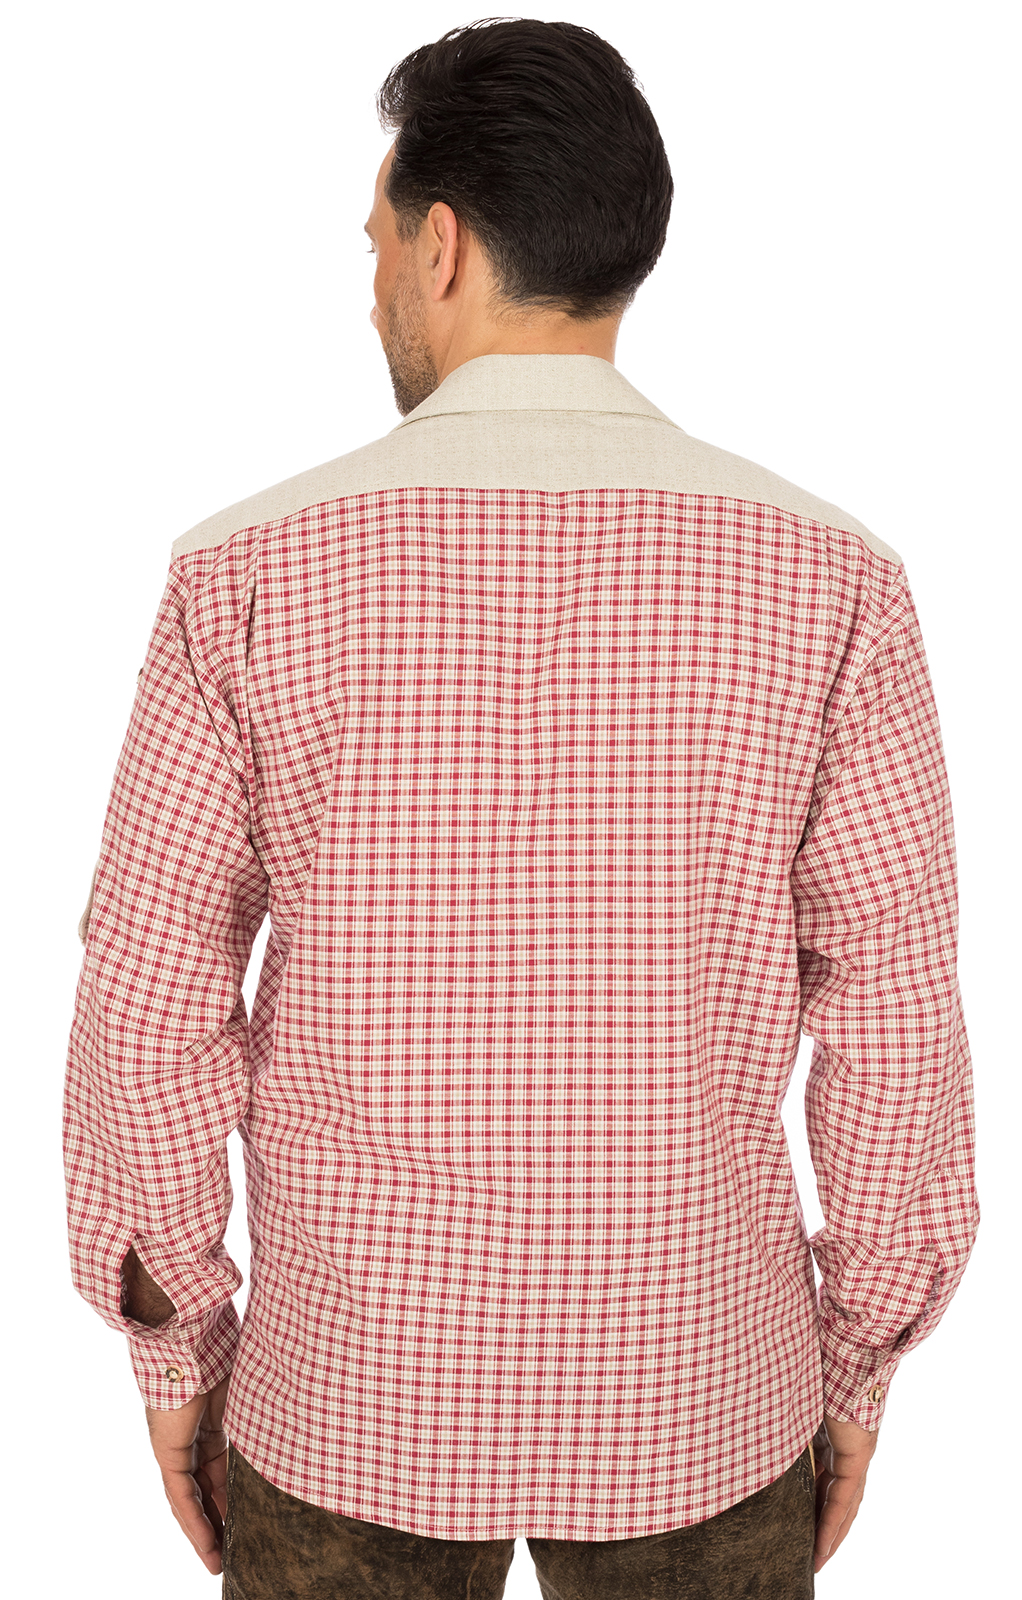 weitere Bilder von German traditional shirt long sleeve MATTHES red